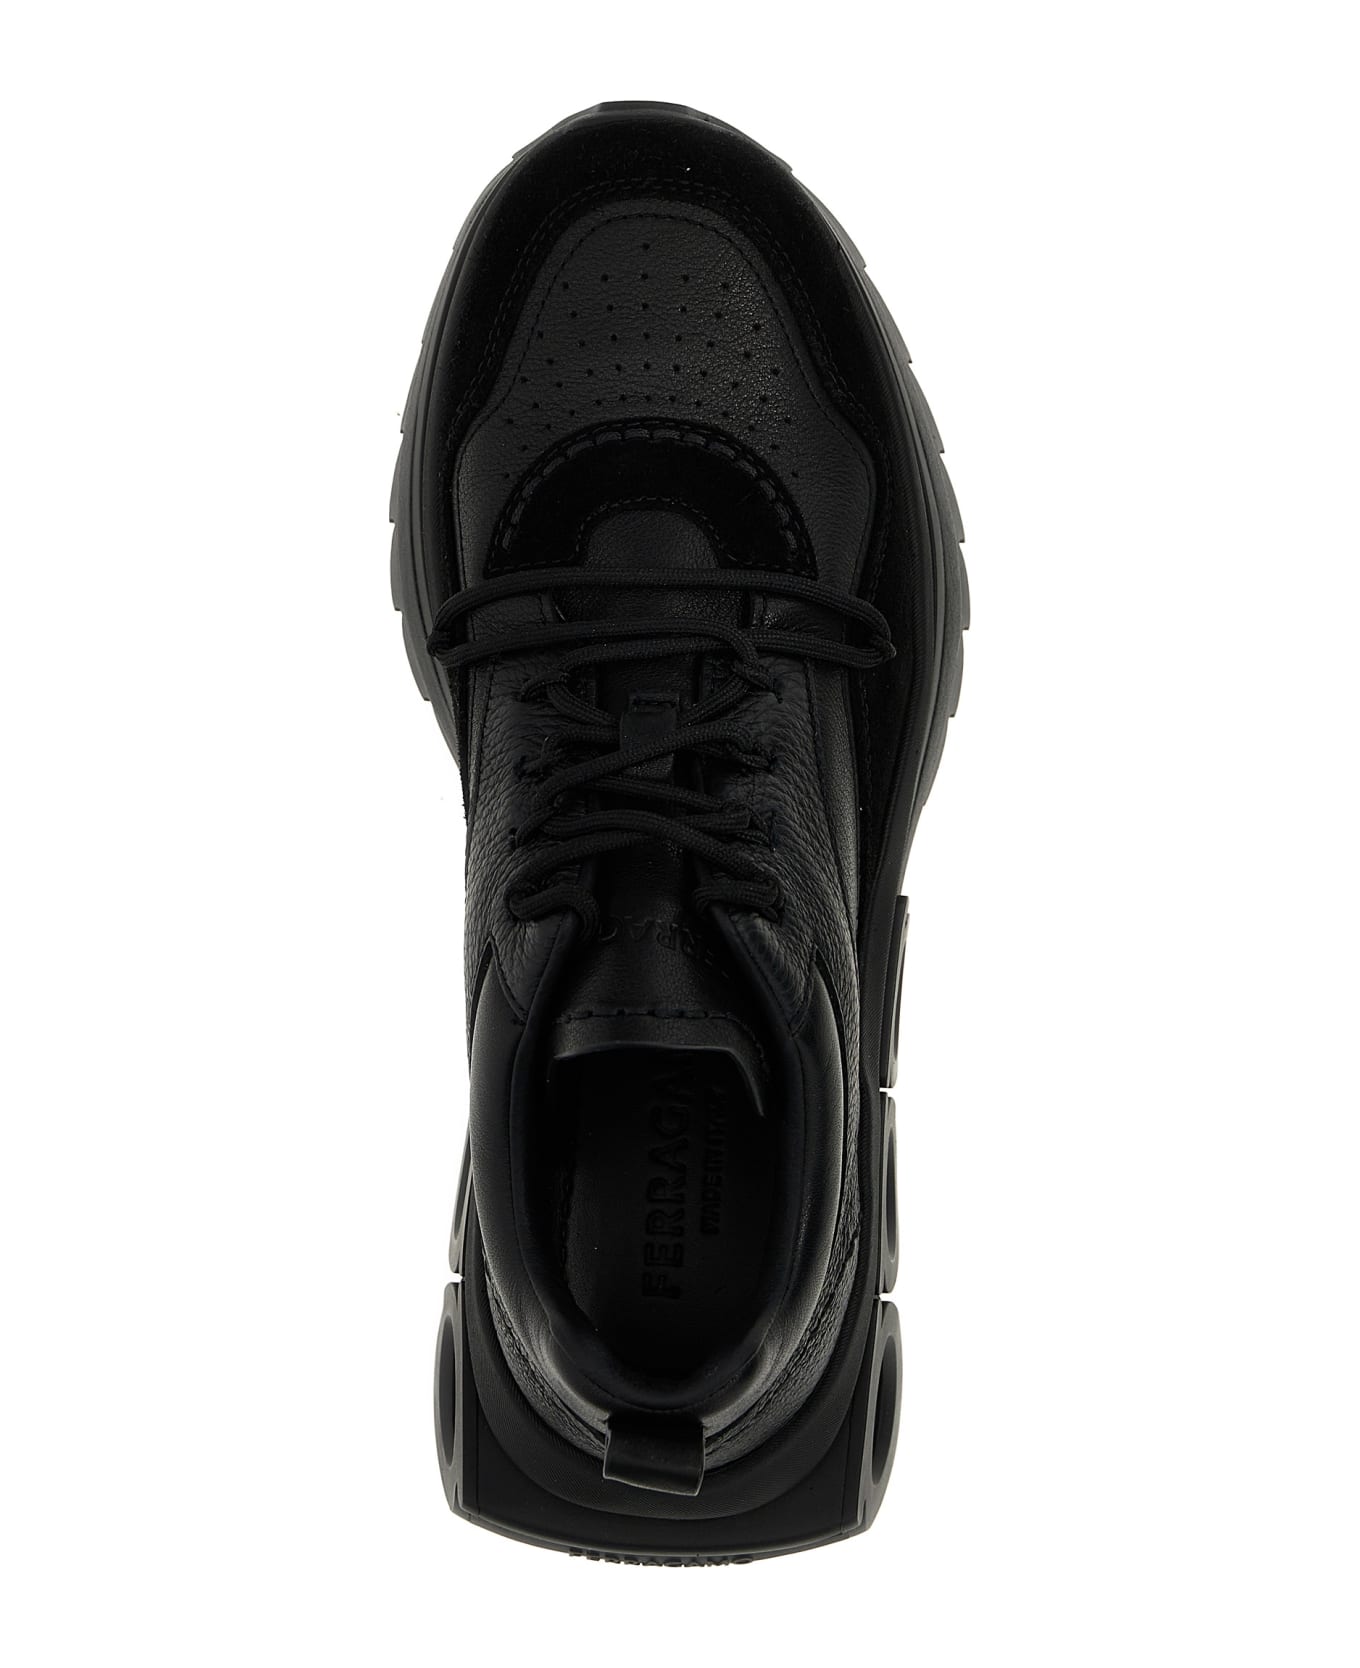 Ferragamo 'mina Skin' Sneakers - Black スニーカー